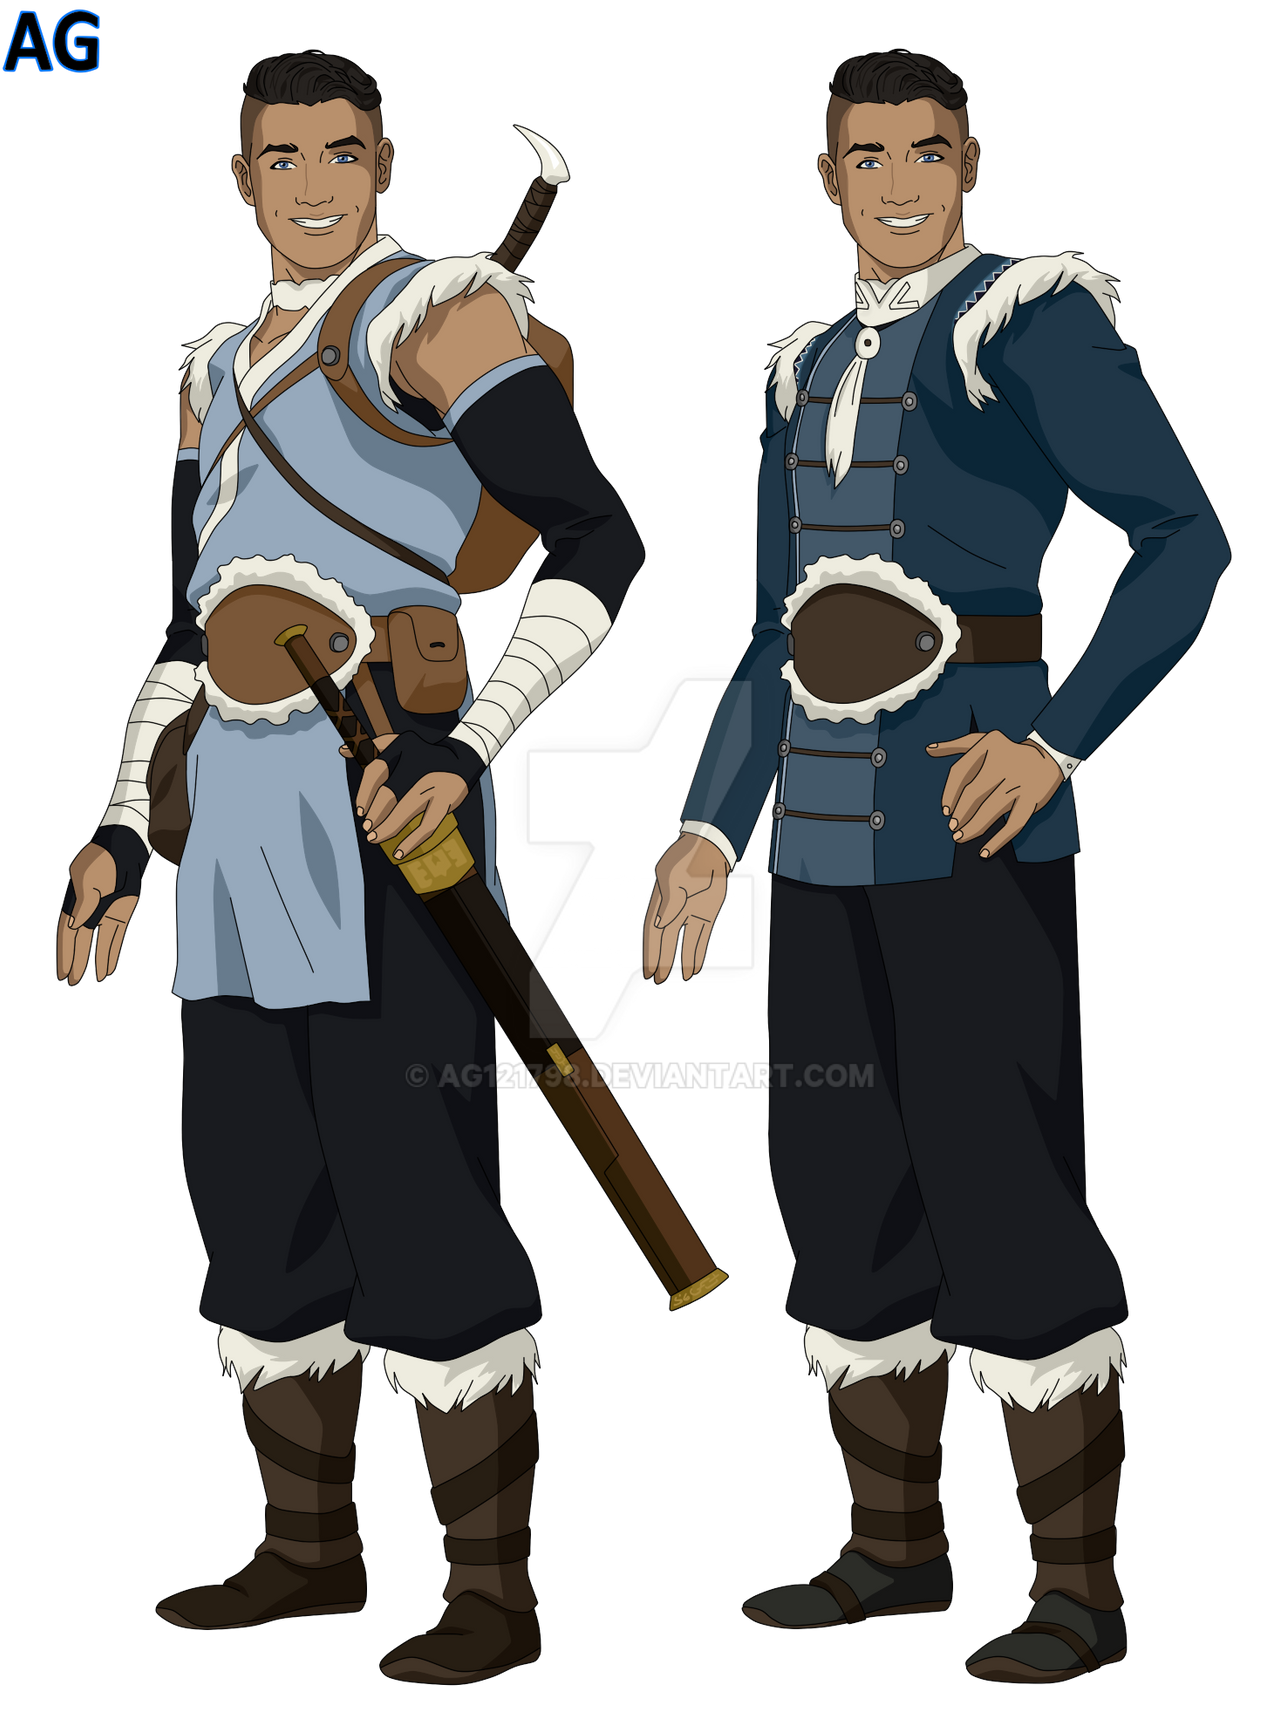 Suki (Avatar), Heroes Wiki